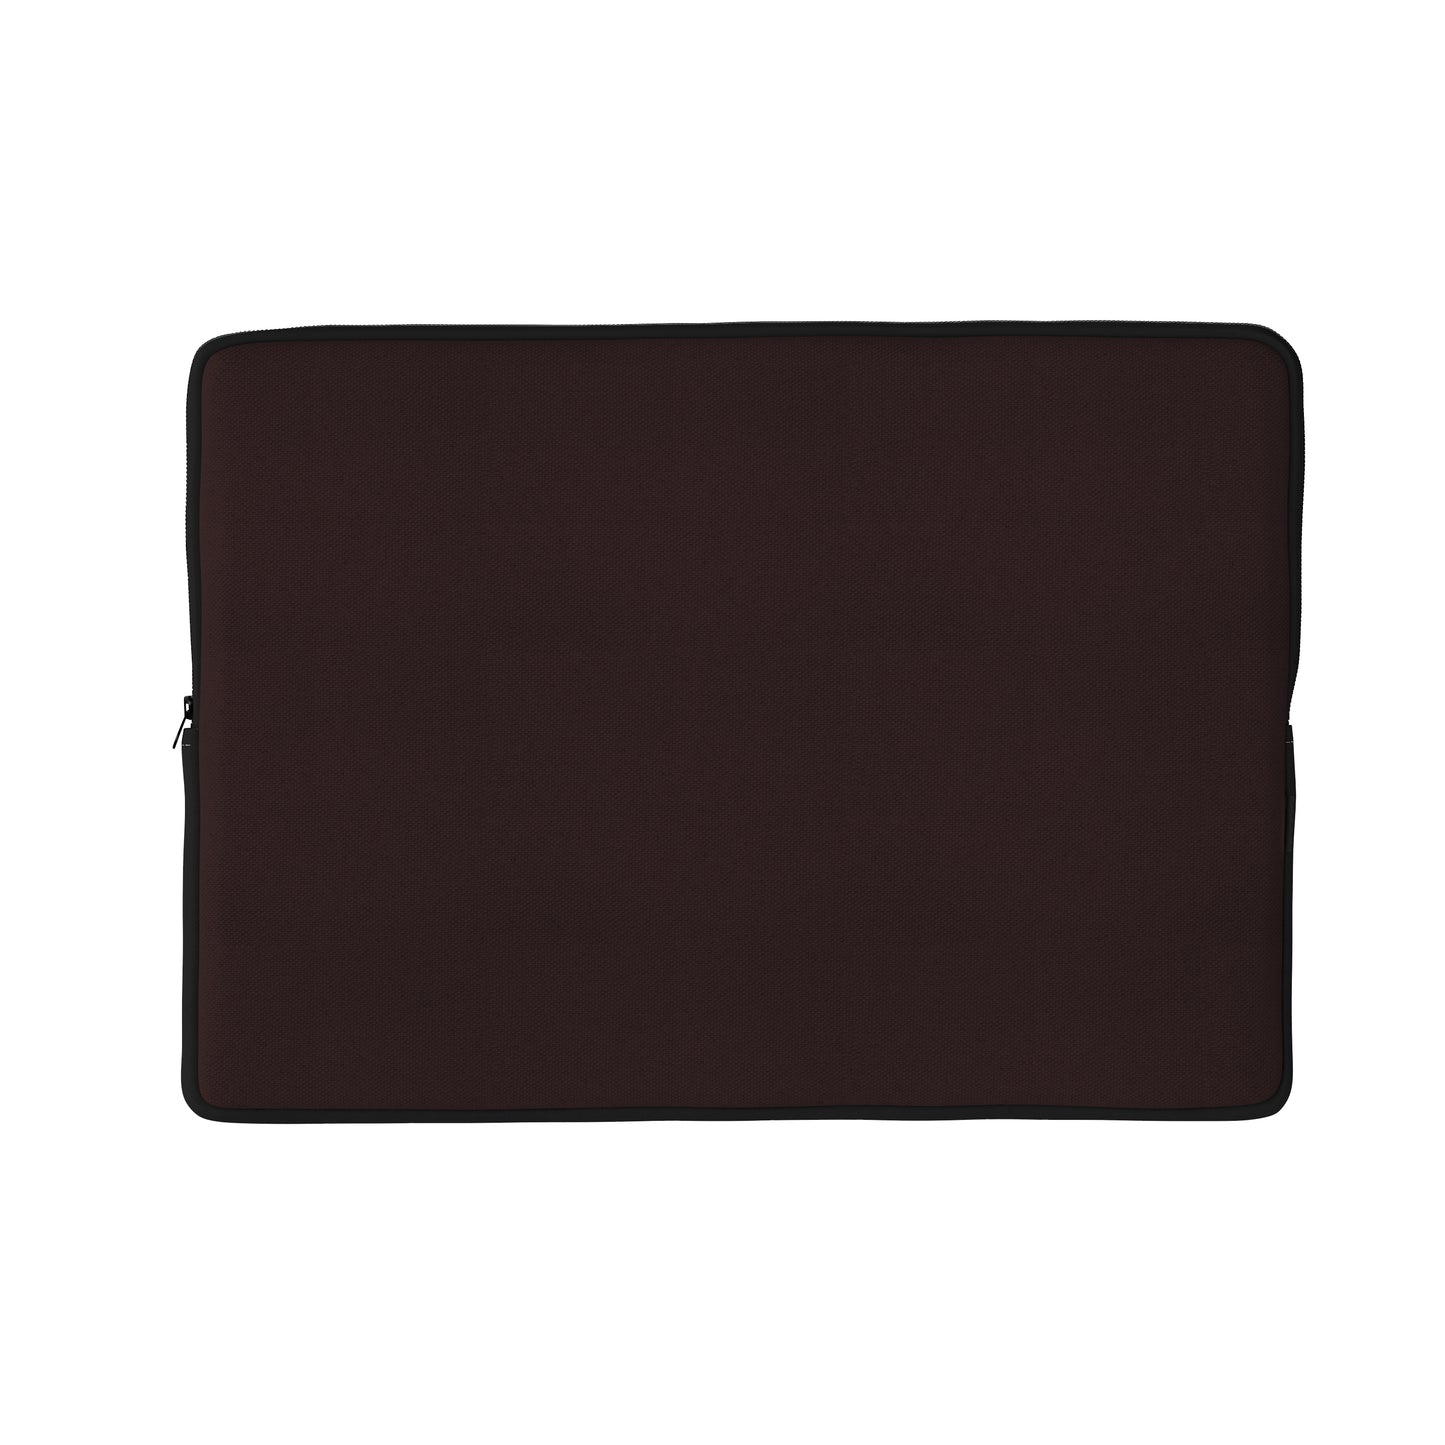 Basic Black laptop sleeve